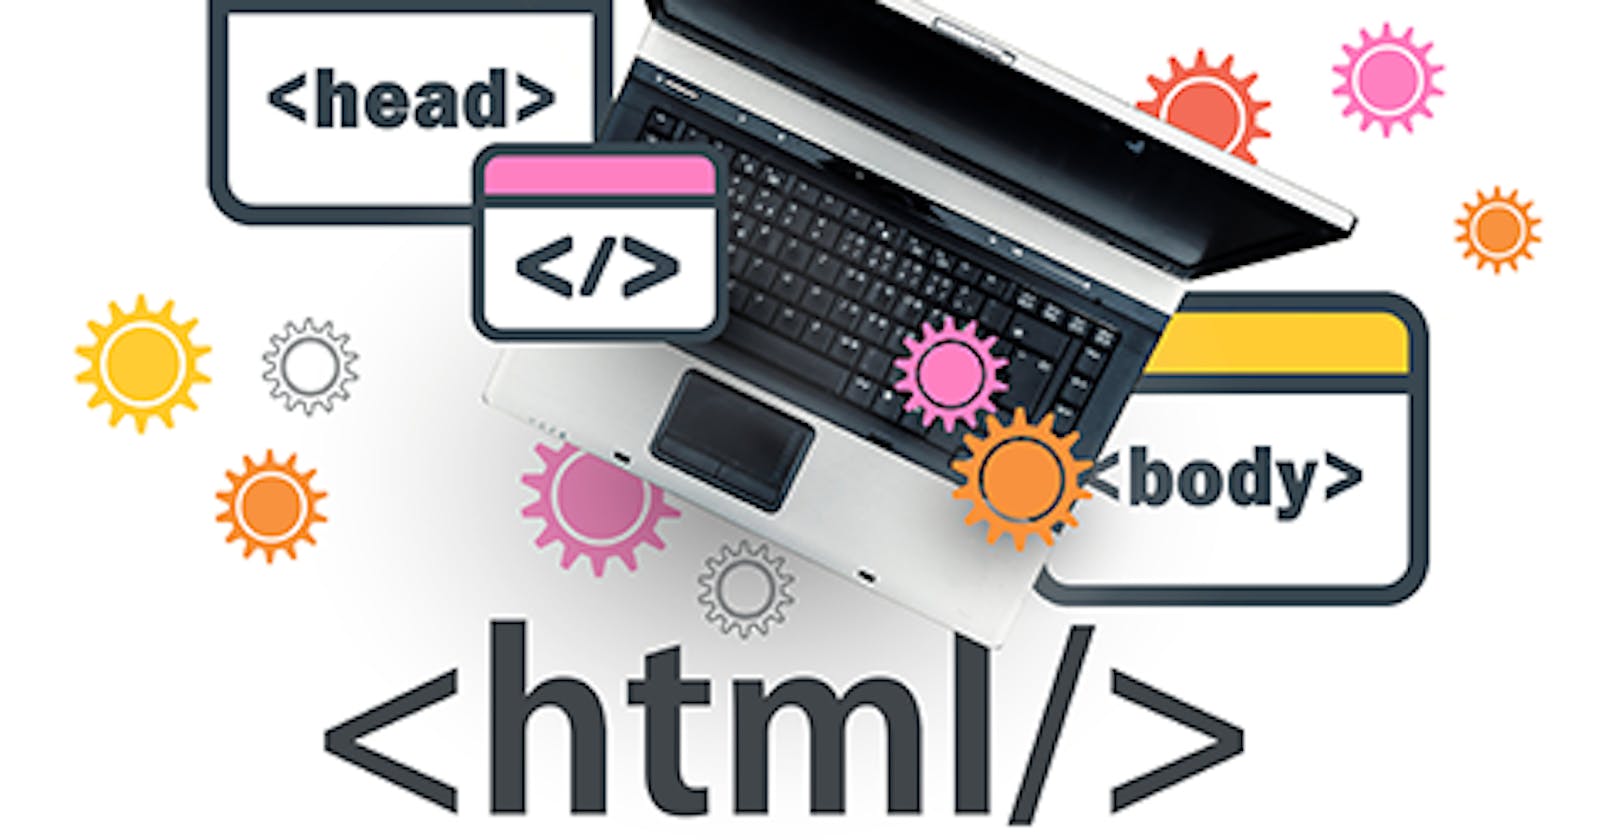 HTML5:  Principle external resource